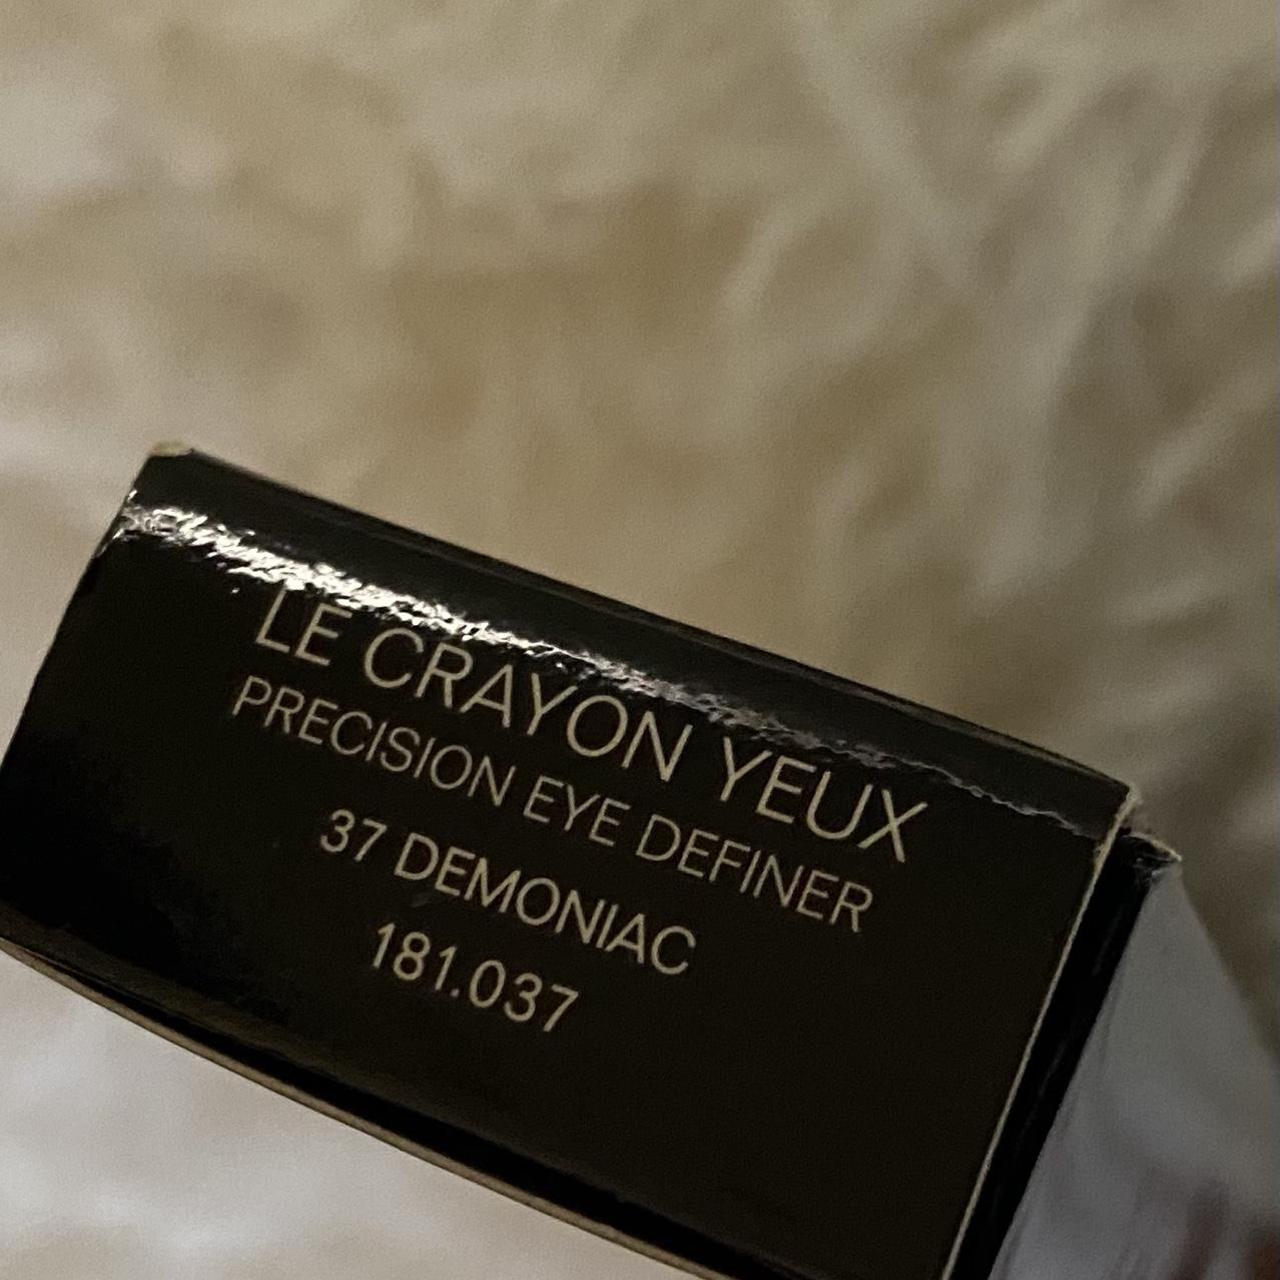 Chanel Le Crayon Yeux - 37 Demoniac 0.03 oz - Depop